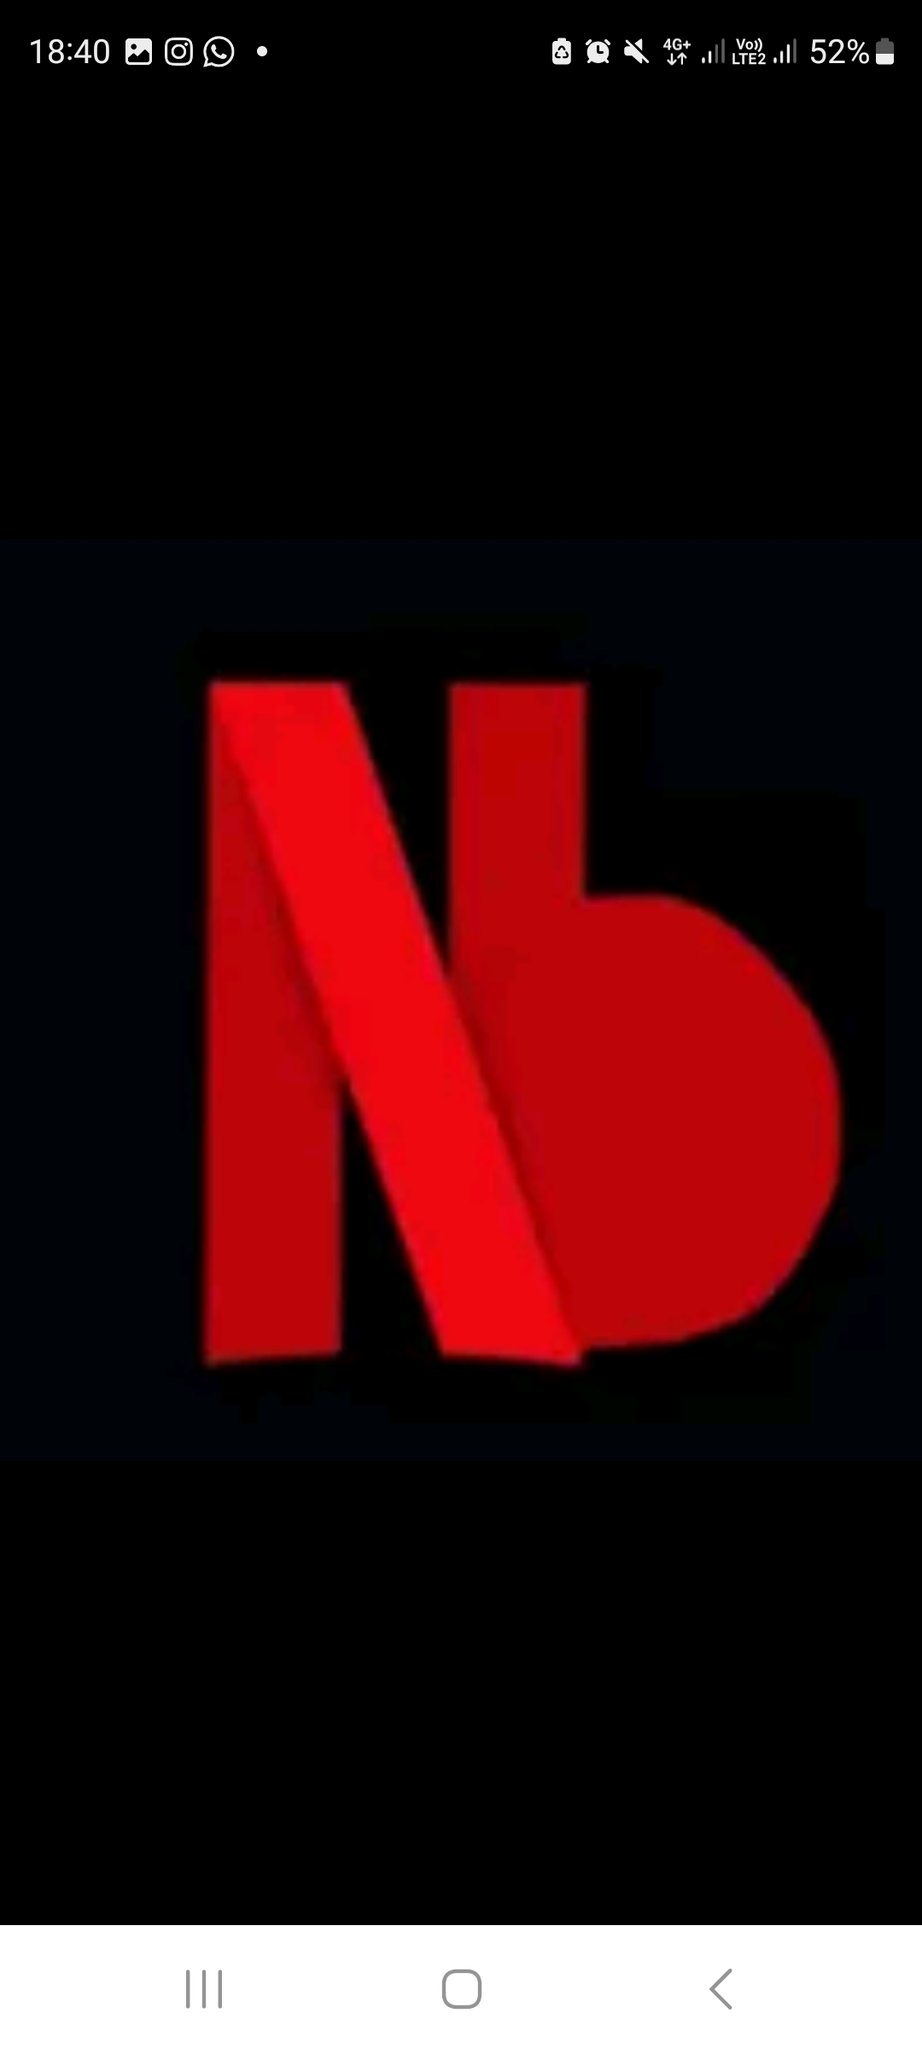 Portal Netflix BR  Fan Account on X: Os Titãs estão de volta! A